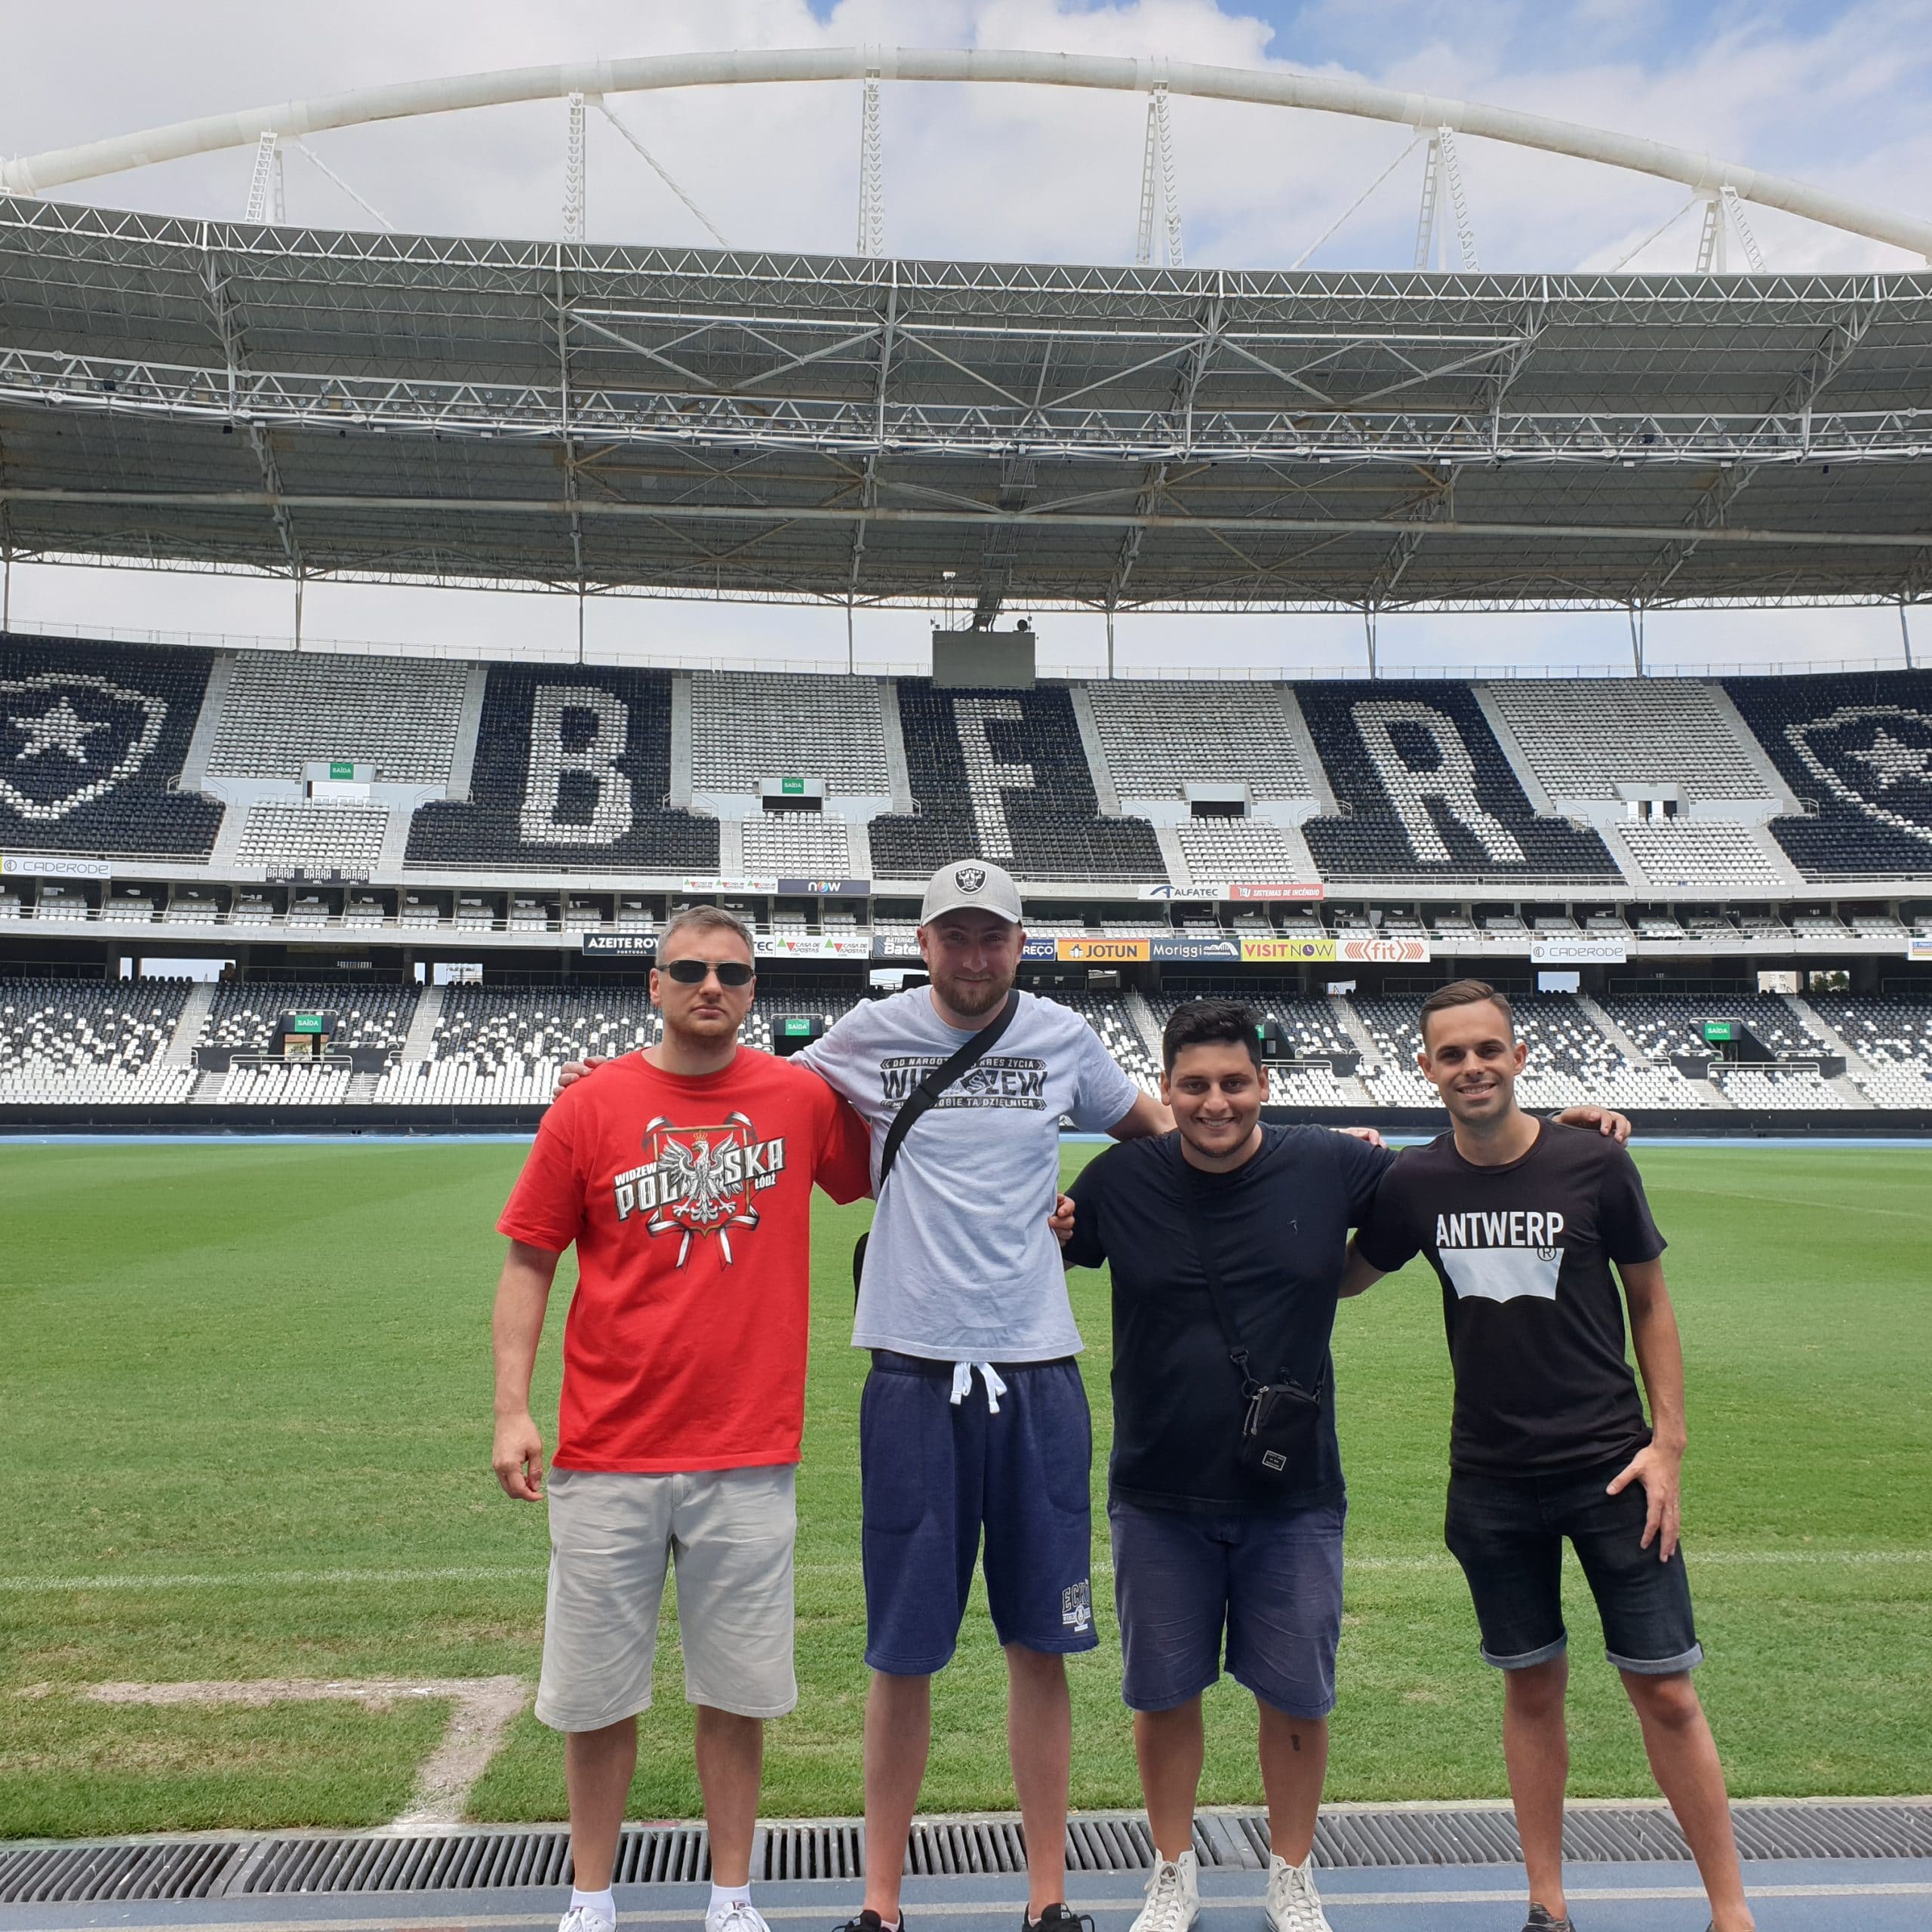 Day 4 - Botafogo Stadium Tour & Sports at Copacabana Beach